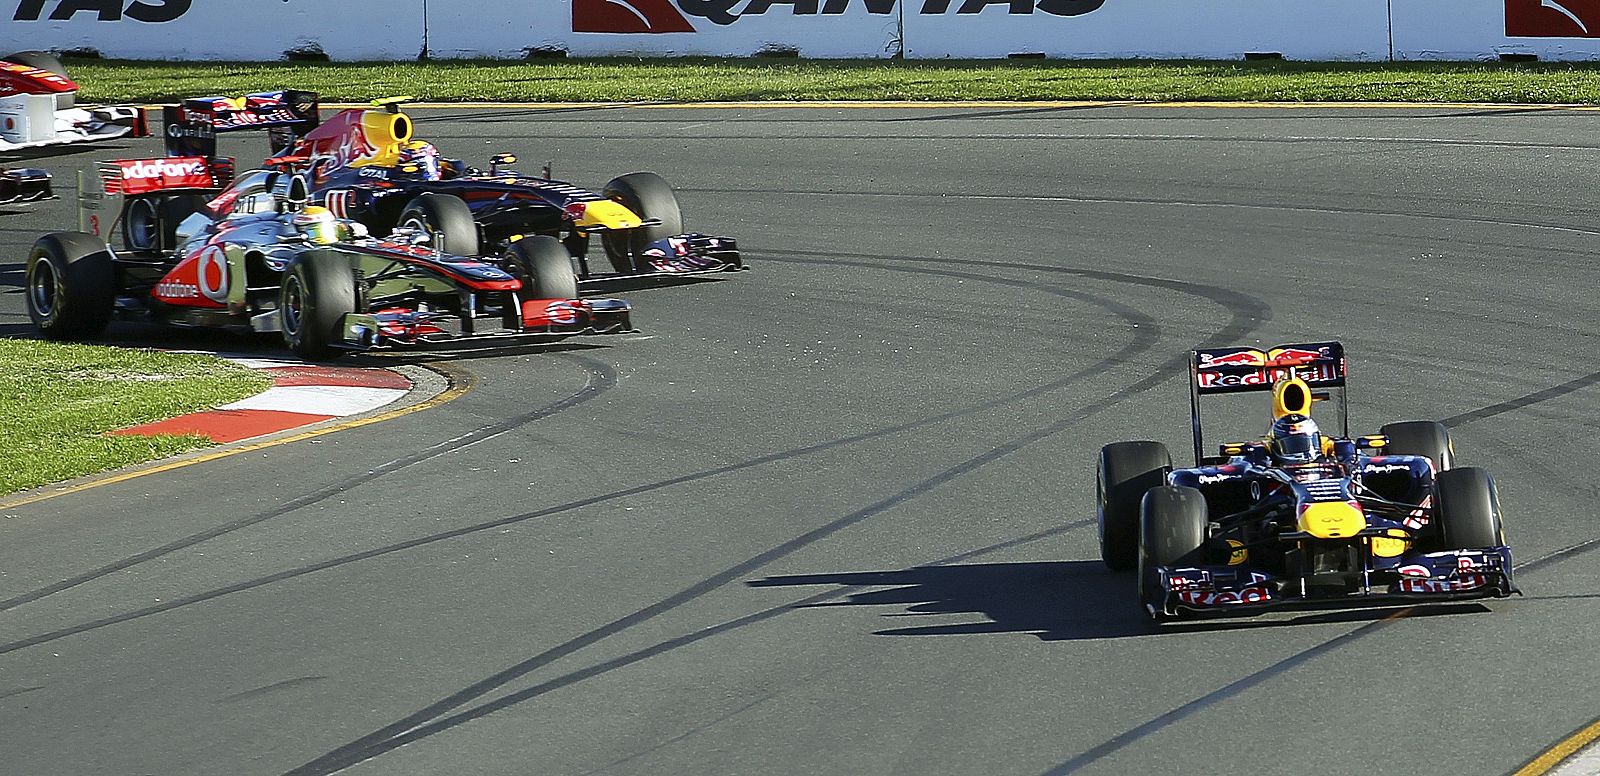 El piloto alemán Sebastian Vettel lideró el Gran Premio de Australia de principio a fin y ganó.